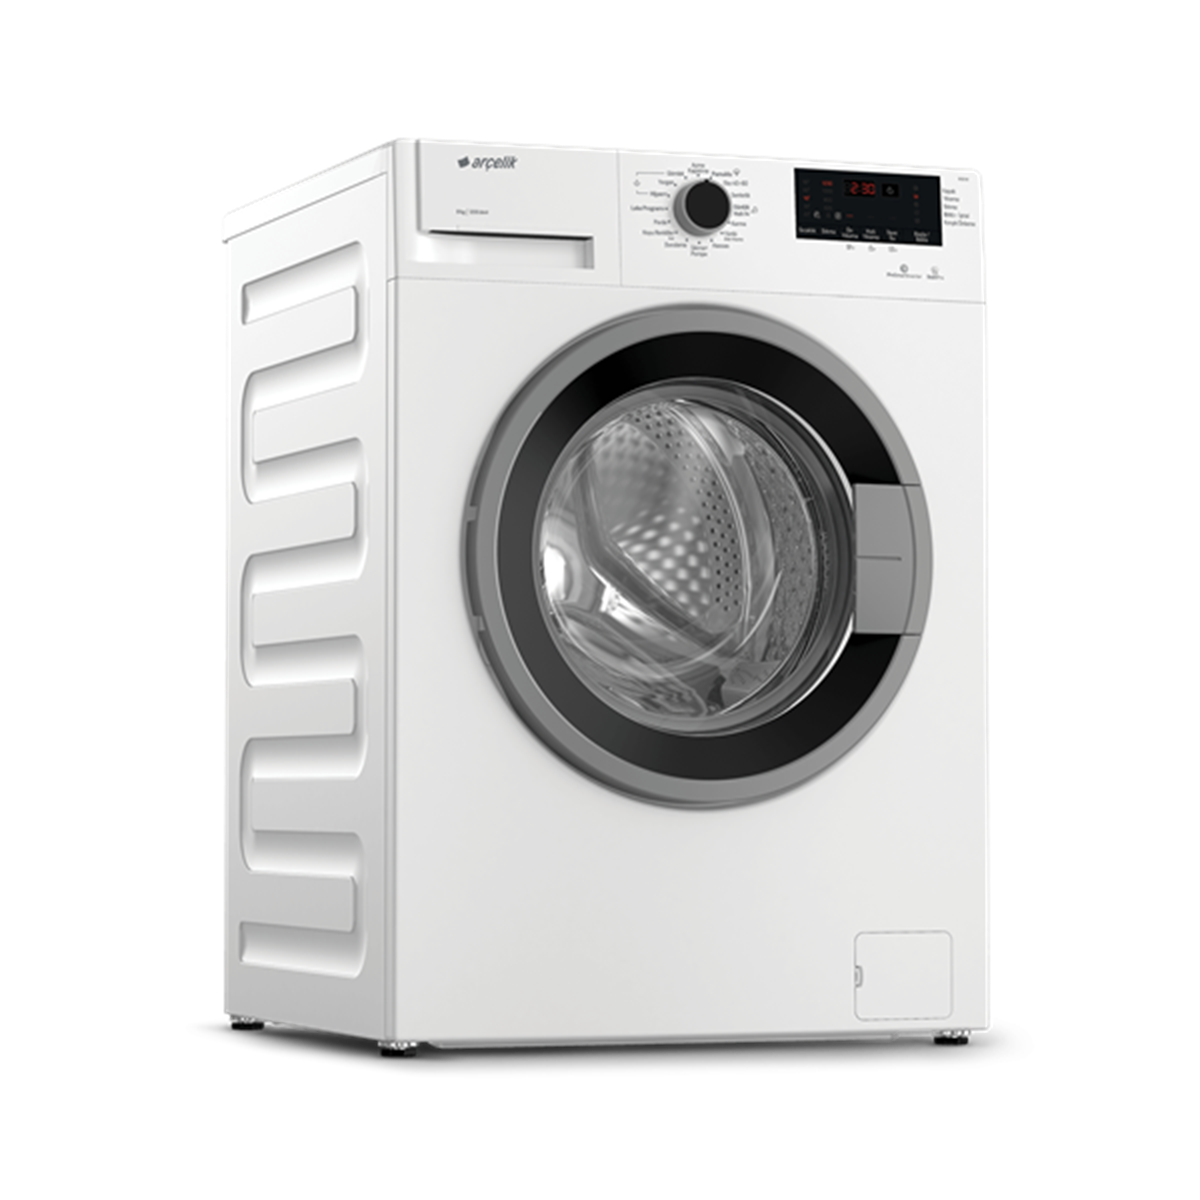 Arçelik 9120 M Çamaşır Makinesi (İstanbul'a Teslim Fiyat) - Arçelik Beyaz  Eşya